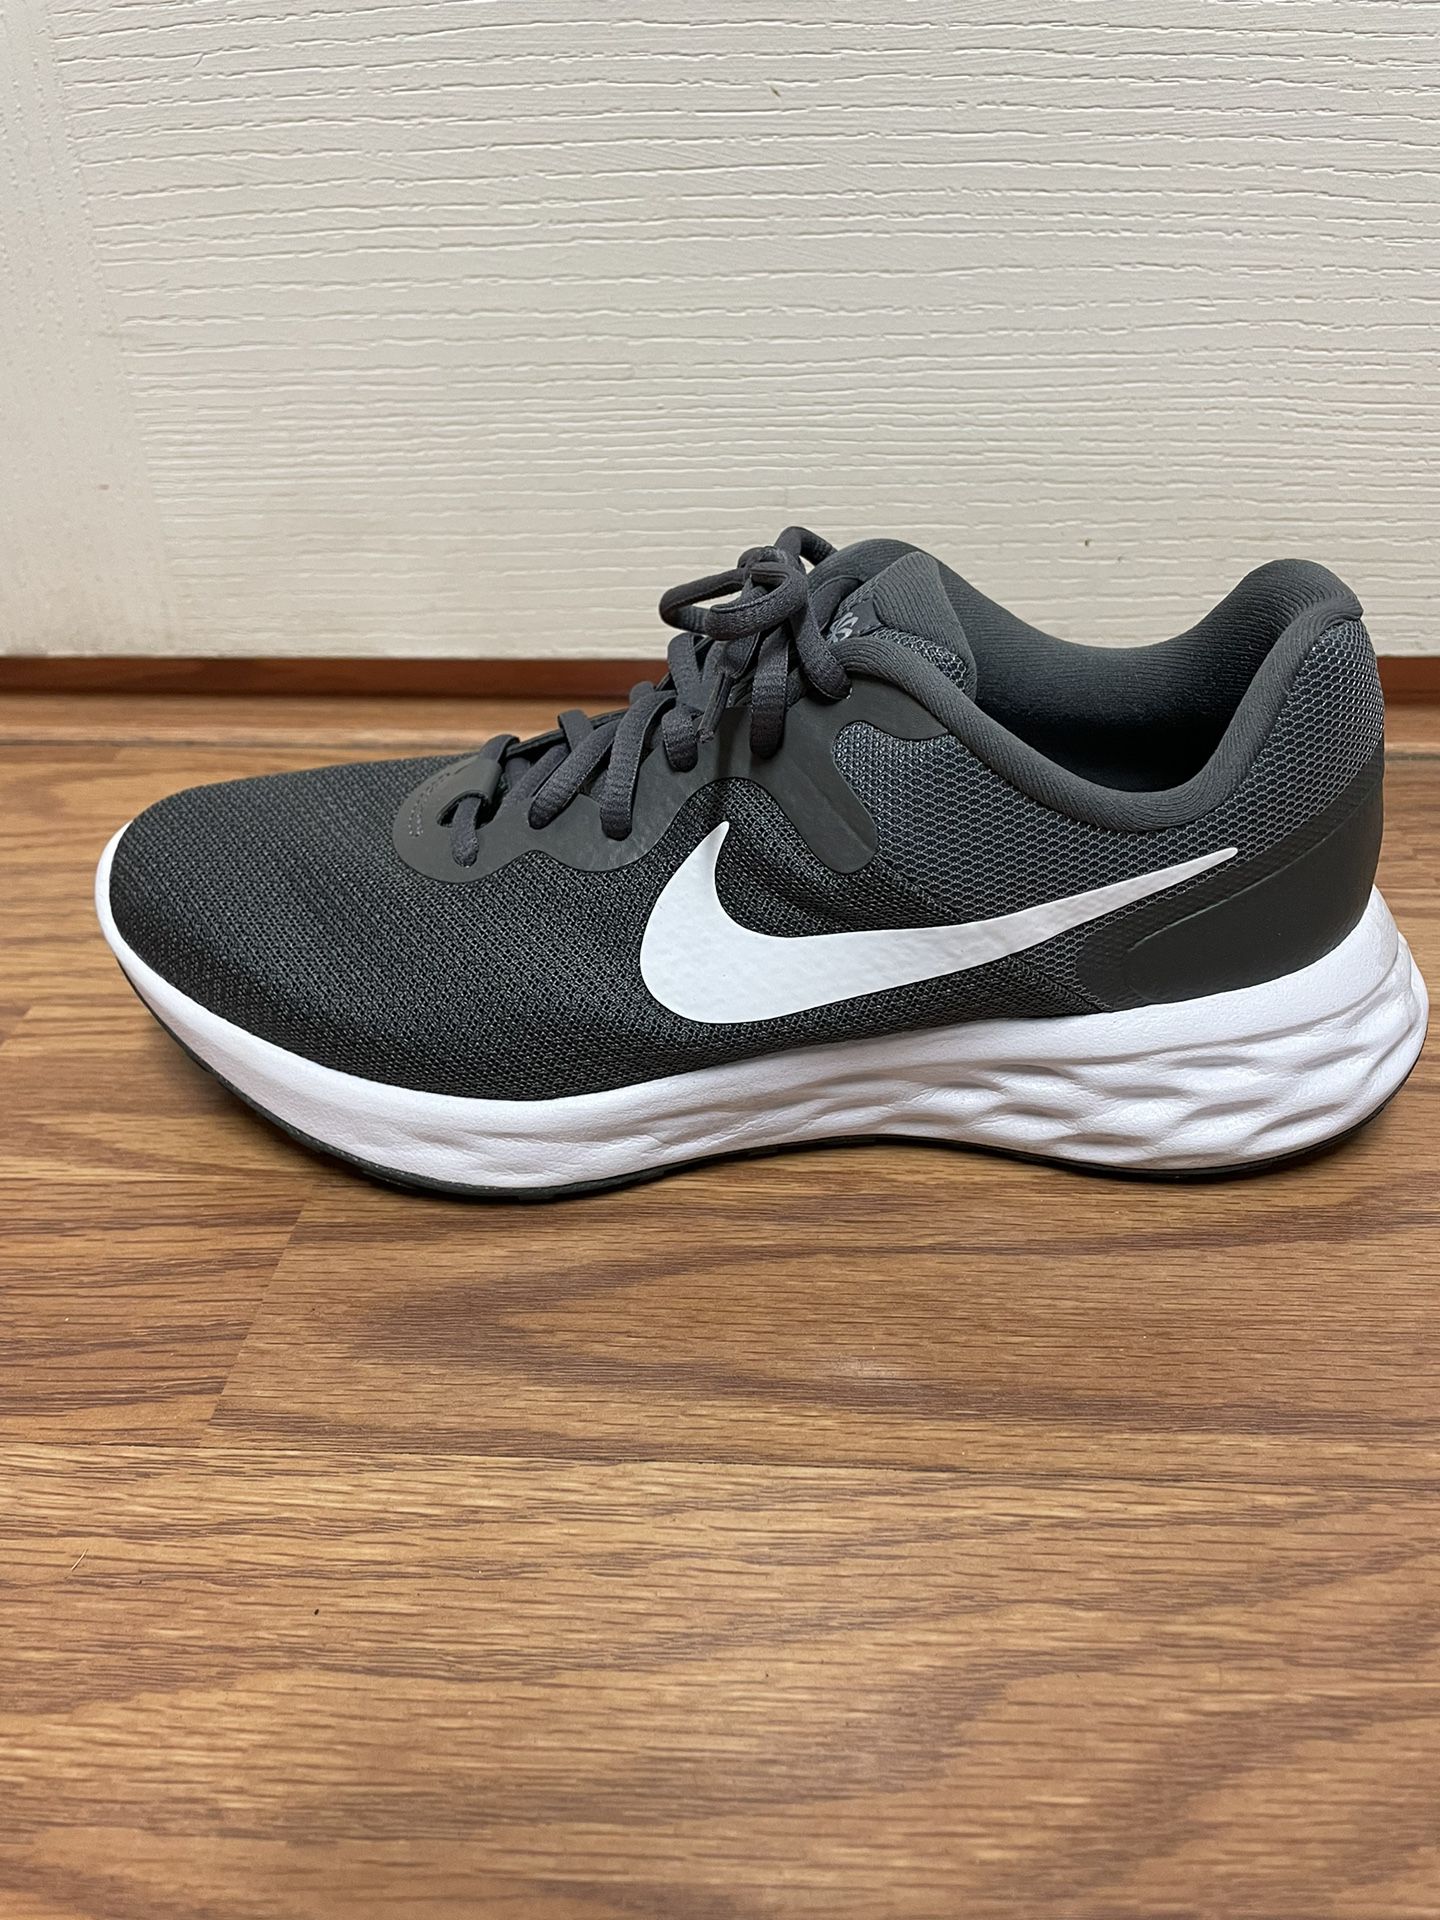 Nike Revolution Running Shoe - Men’s Size 7.5 - *** NEW ***